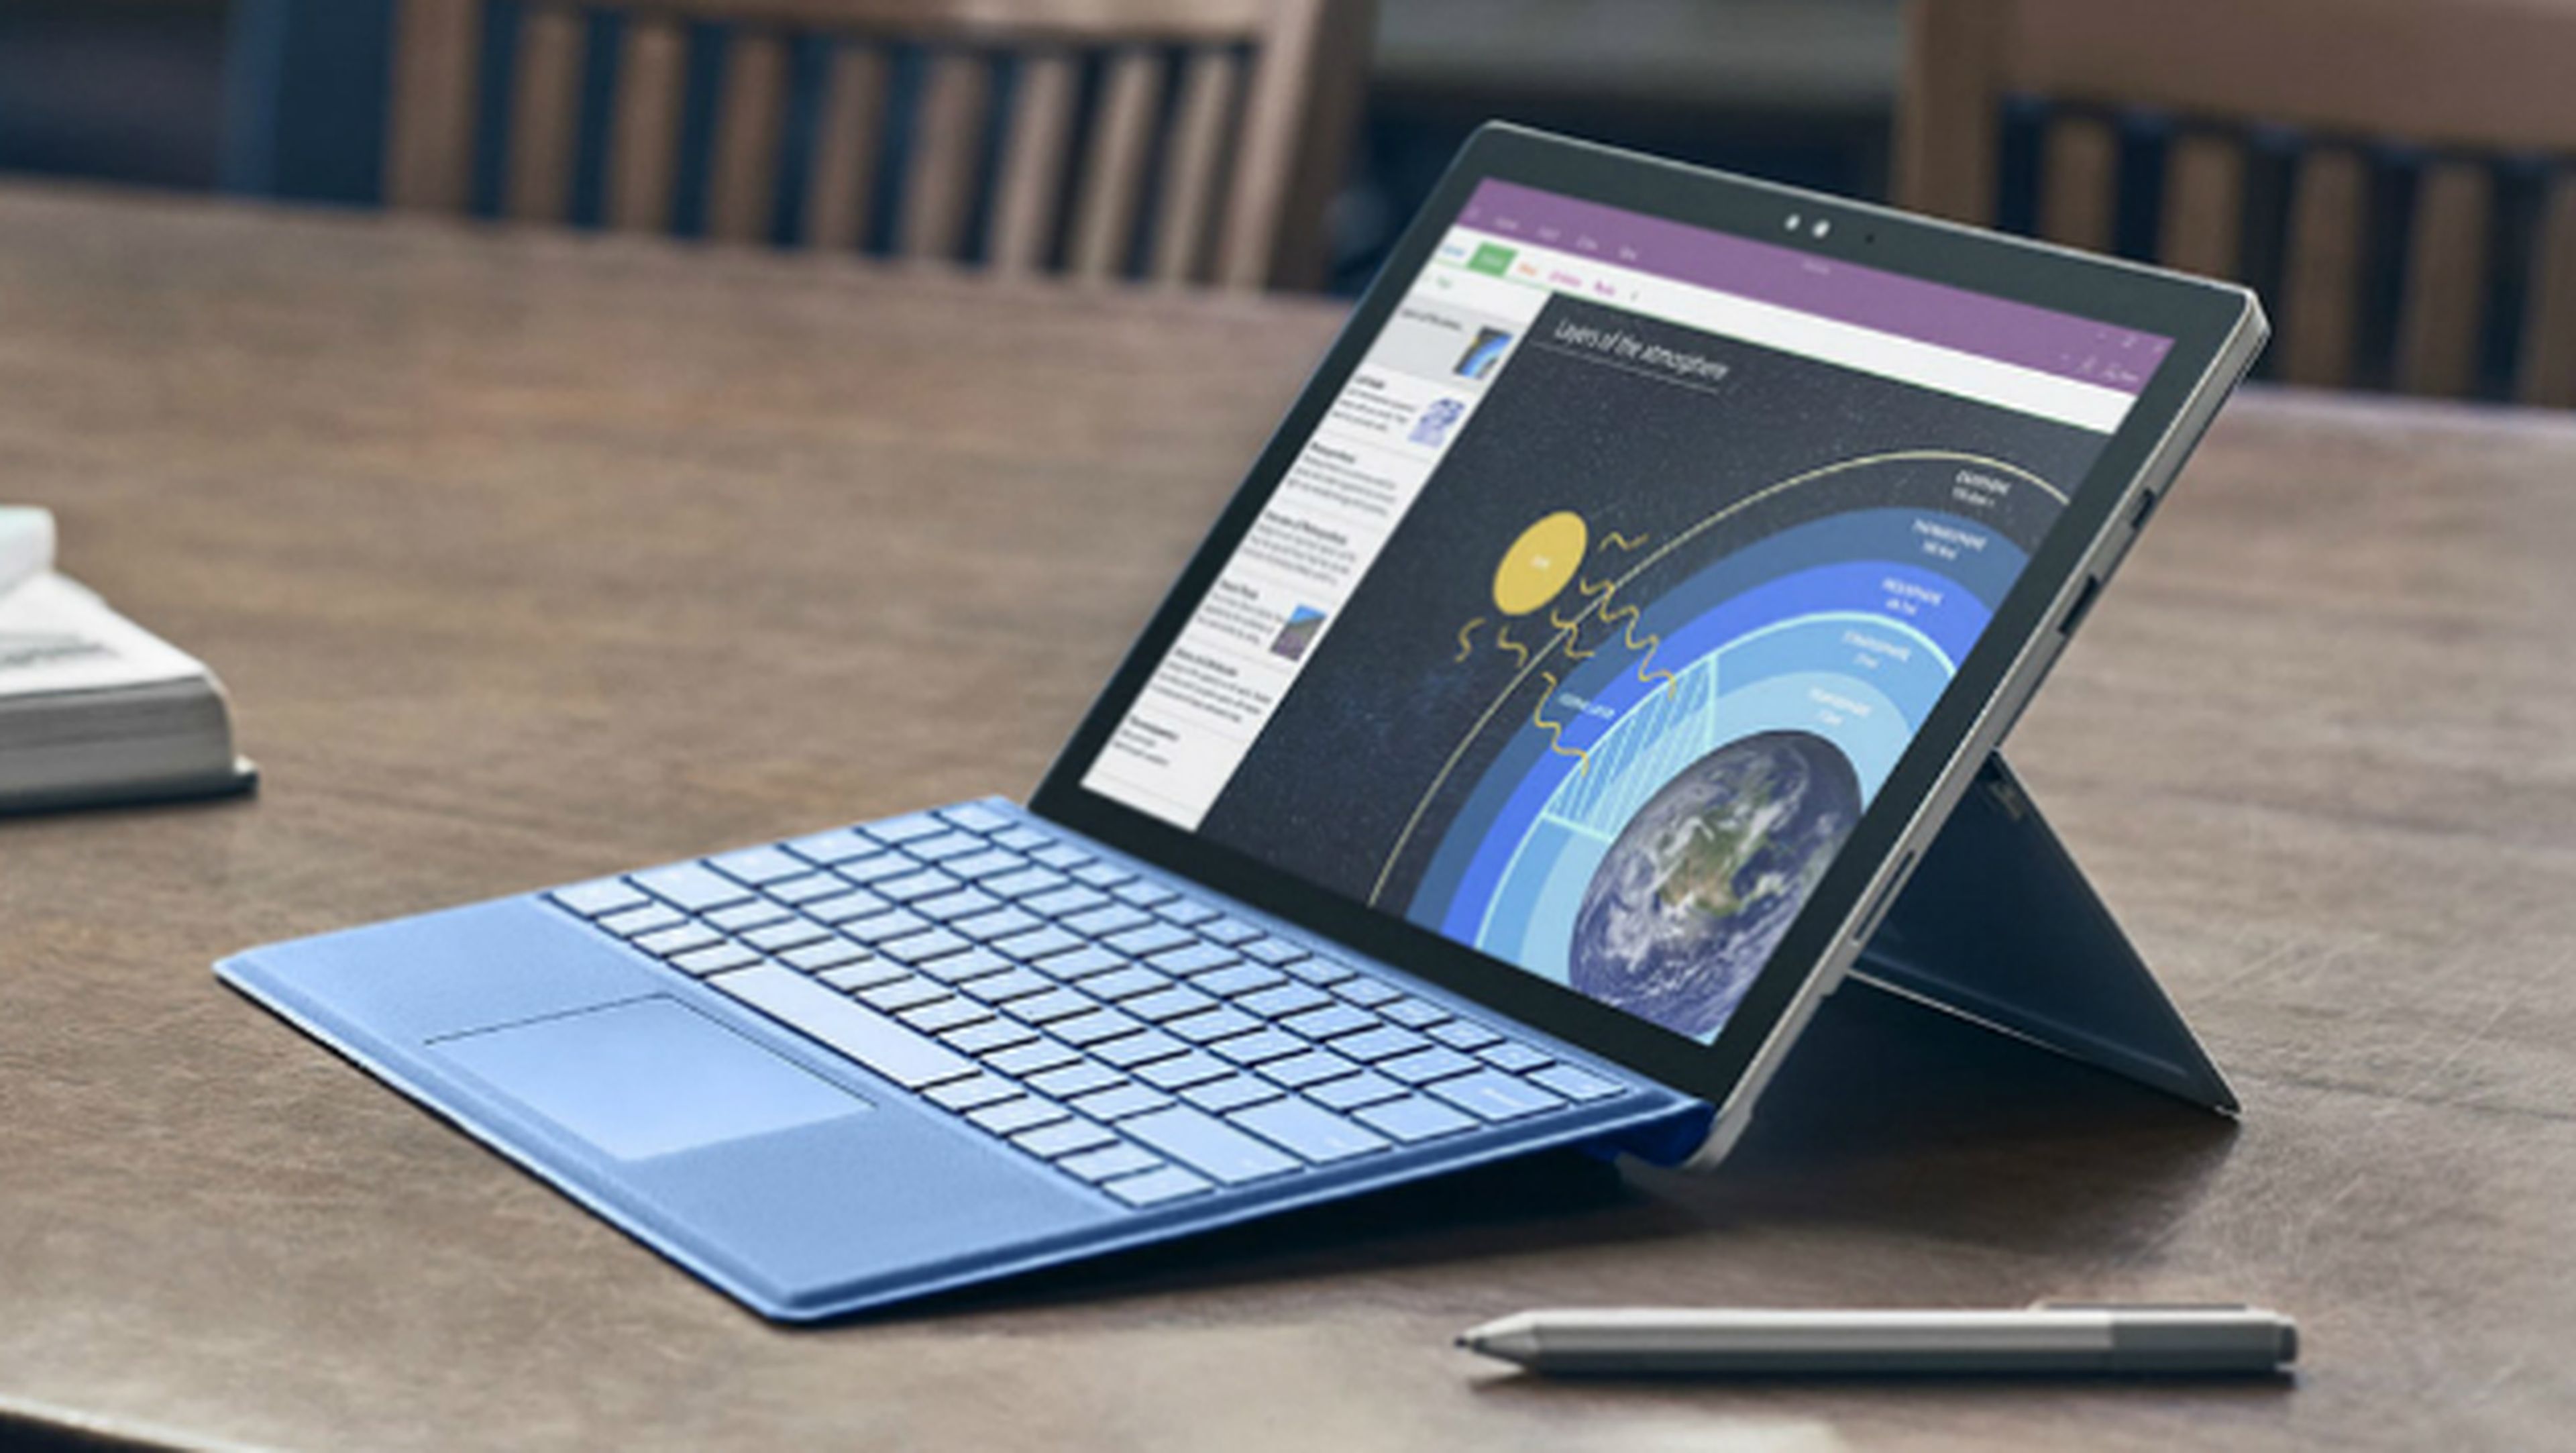 Presentación de Microsoft el 23 de mayo, probablemente con nueva Surface.